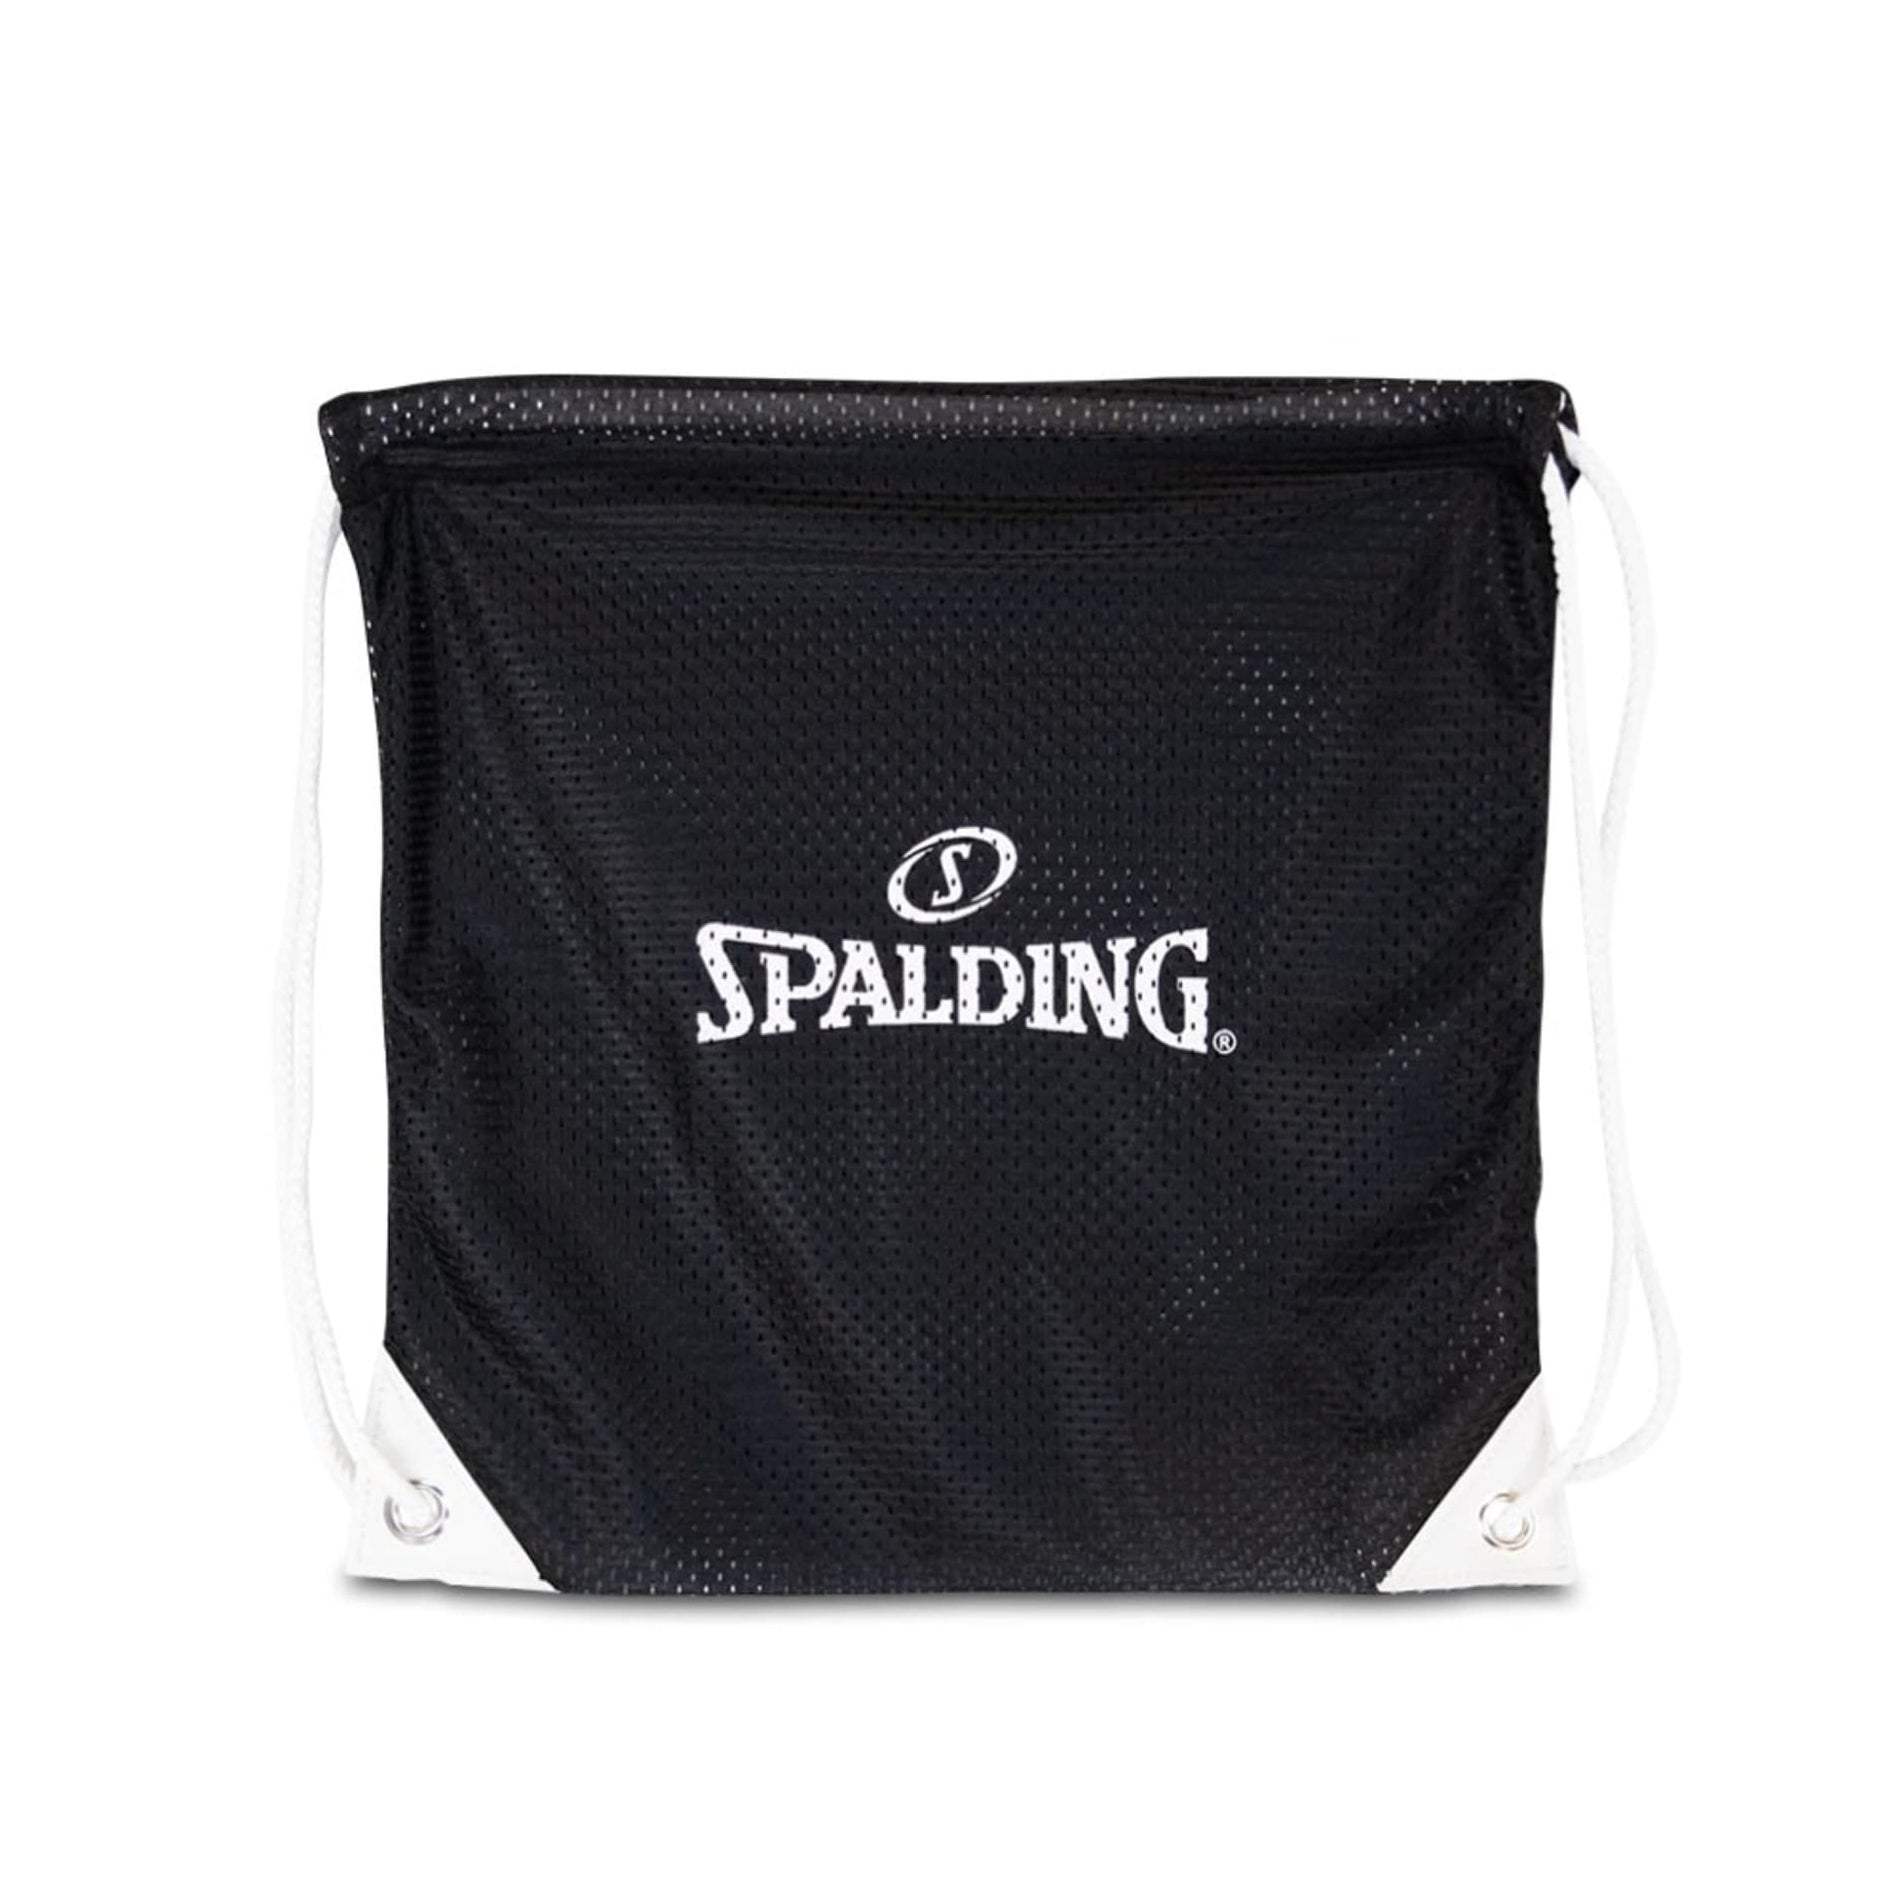 Spalding NBA Basketball Leather Duffle Bag Vintage 3 Pocket Large Gym Bag |  eBay